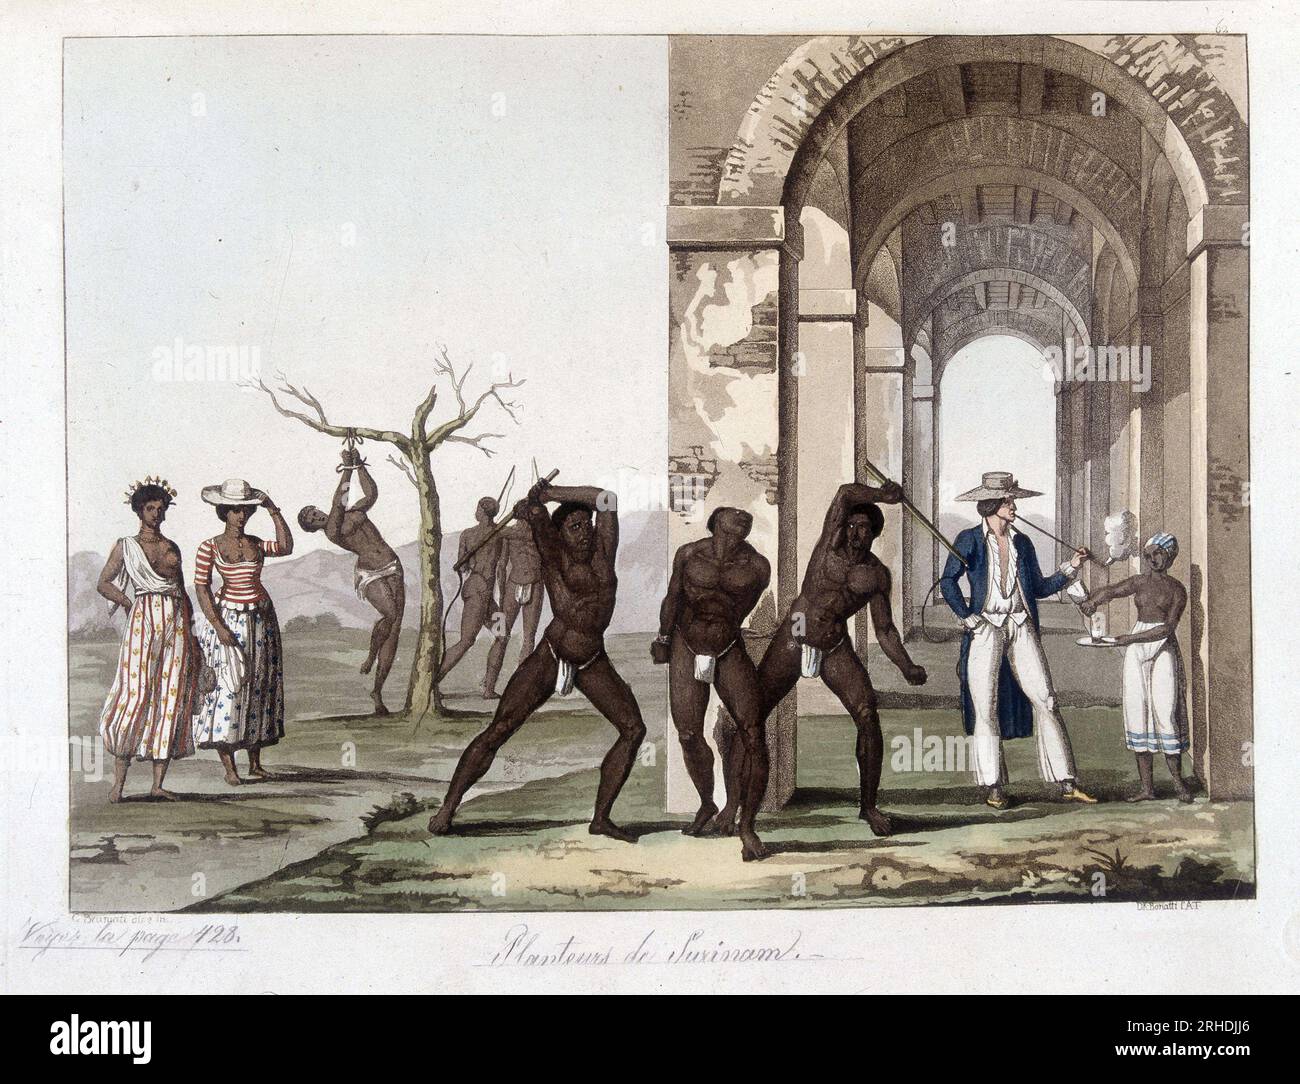 Planteurs du Surinam: Esclaves battus et maltraite en Guyane (fin XVIIIeme siecle) - in 'Le Costume ancien et moderne' de Jules Ferrario, 1819-1820 Stock Photo